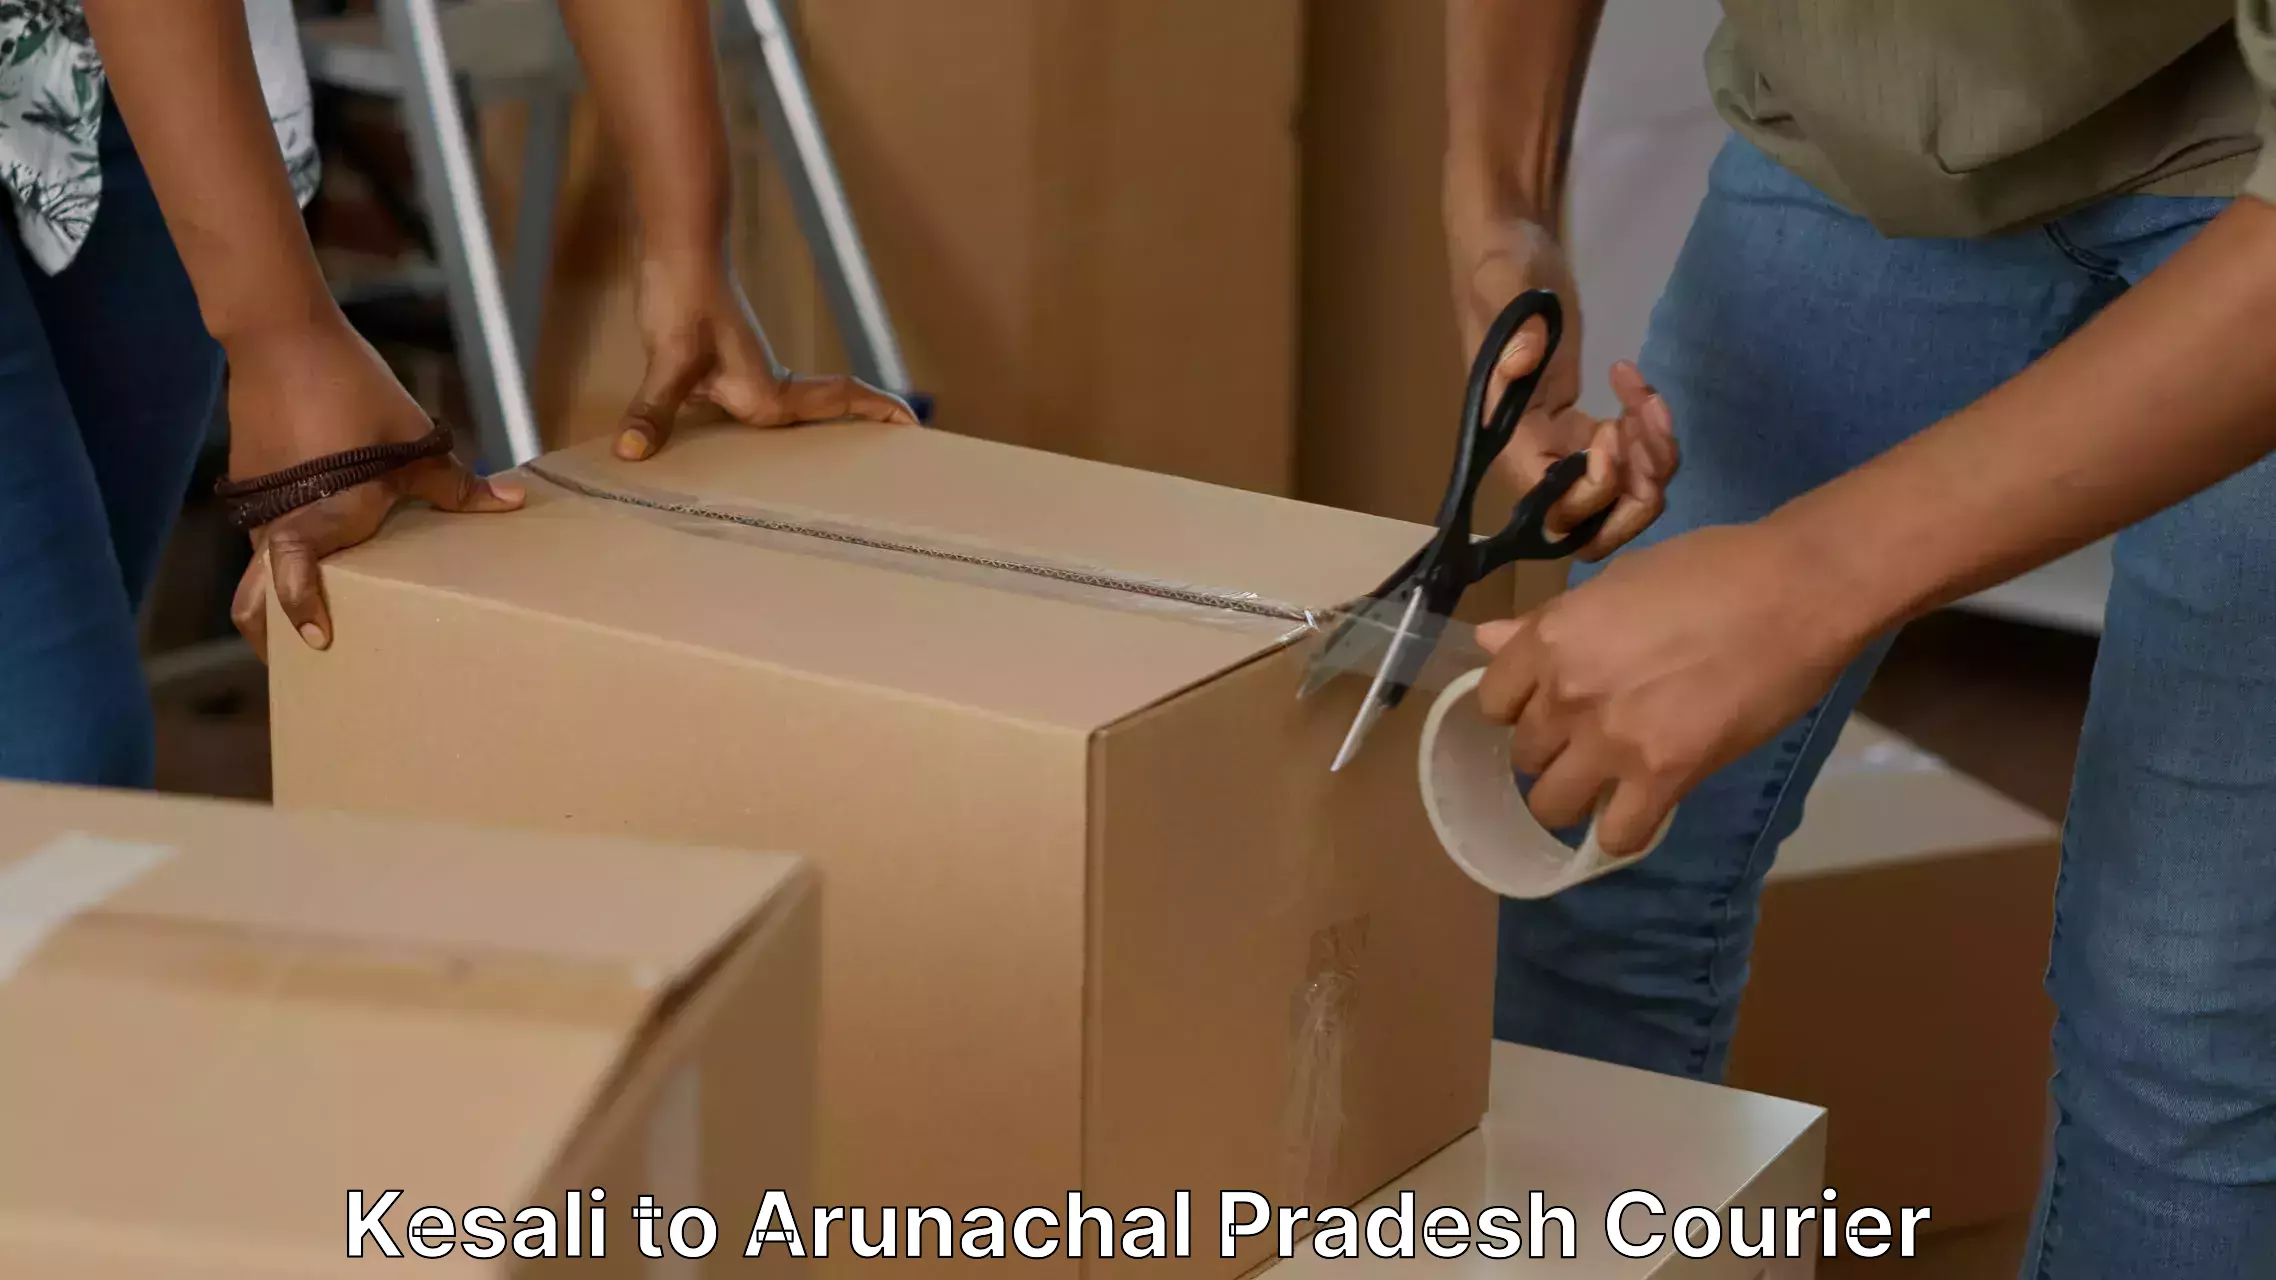 Residential moving experts Kesali to Arunachal Pradesh